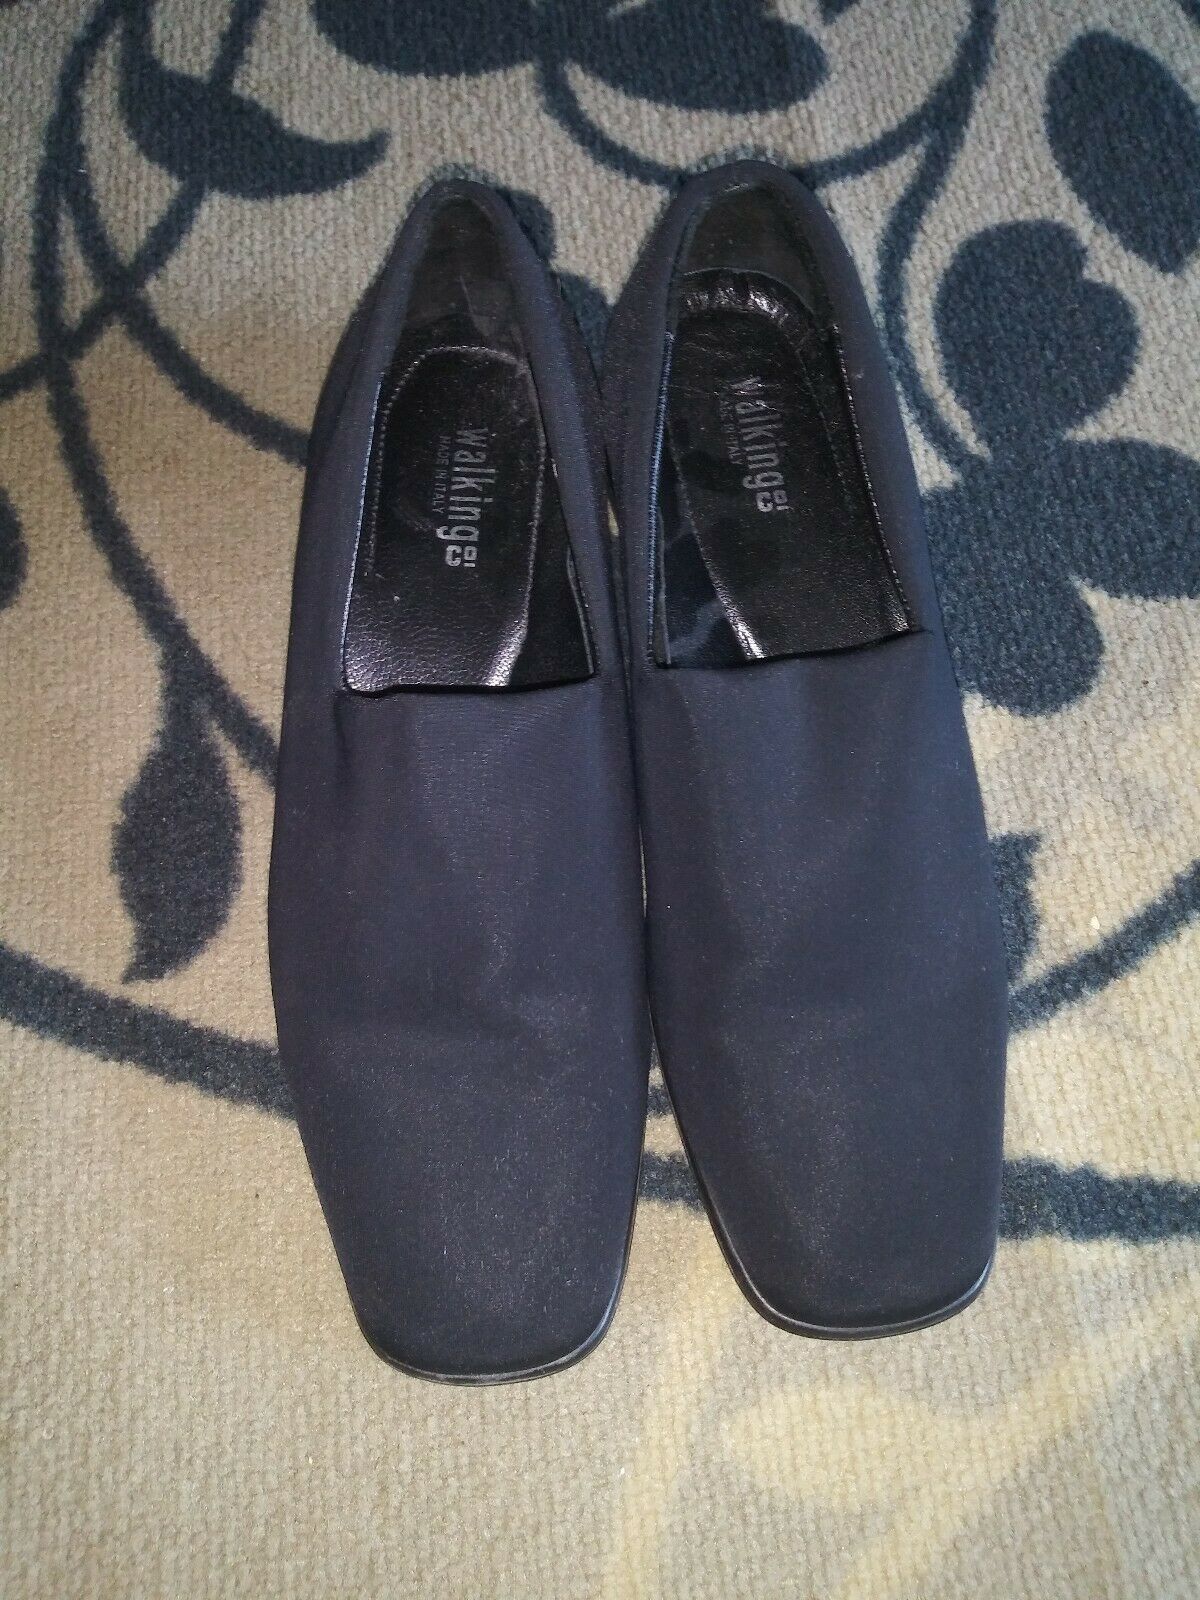 Walking Co Women's Black Slip On Heels Shoes Made in Italy Sz 6.5